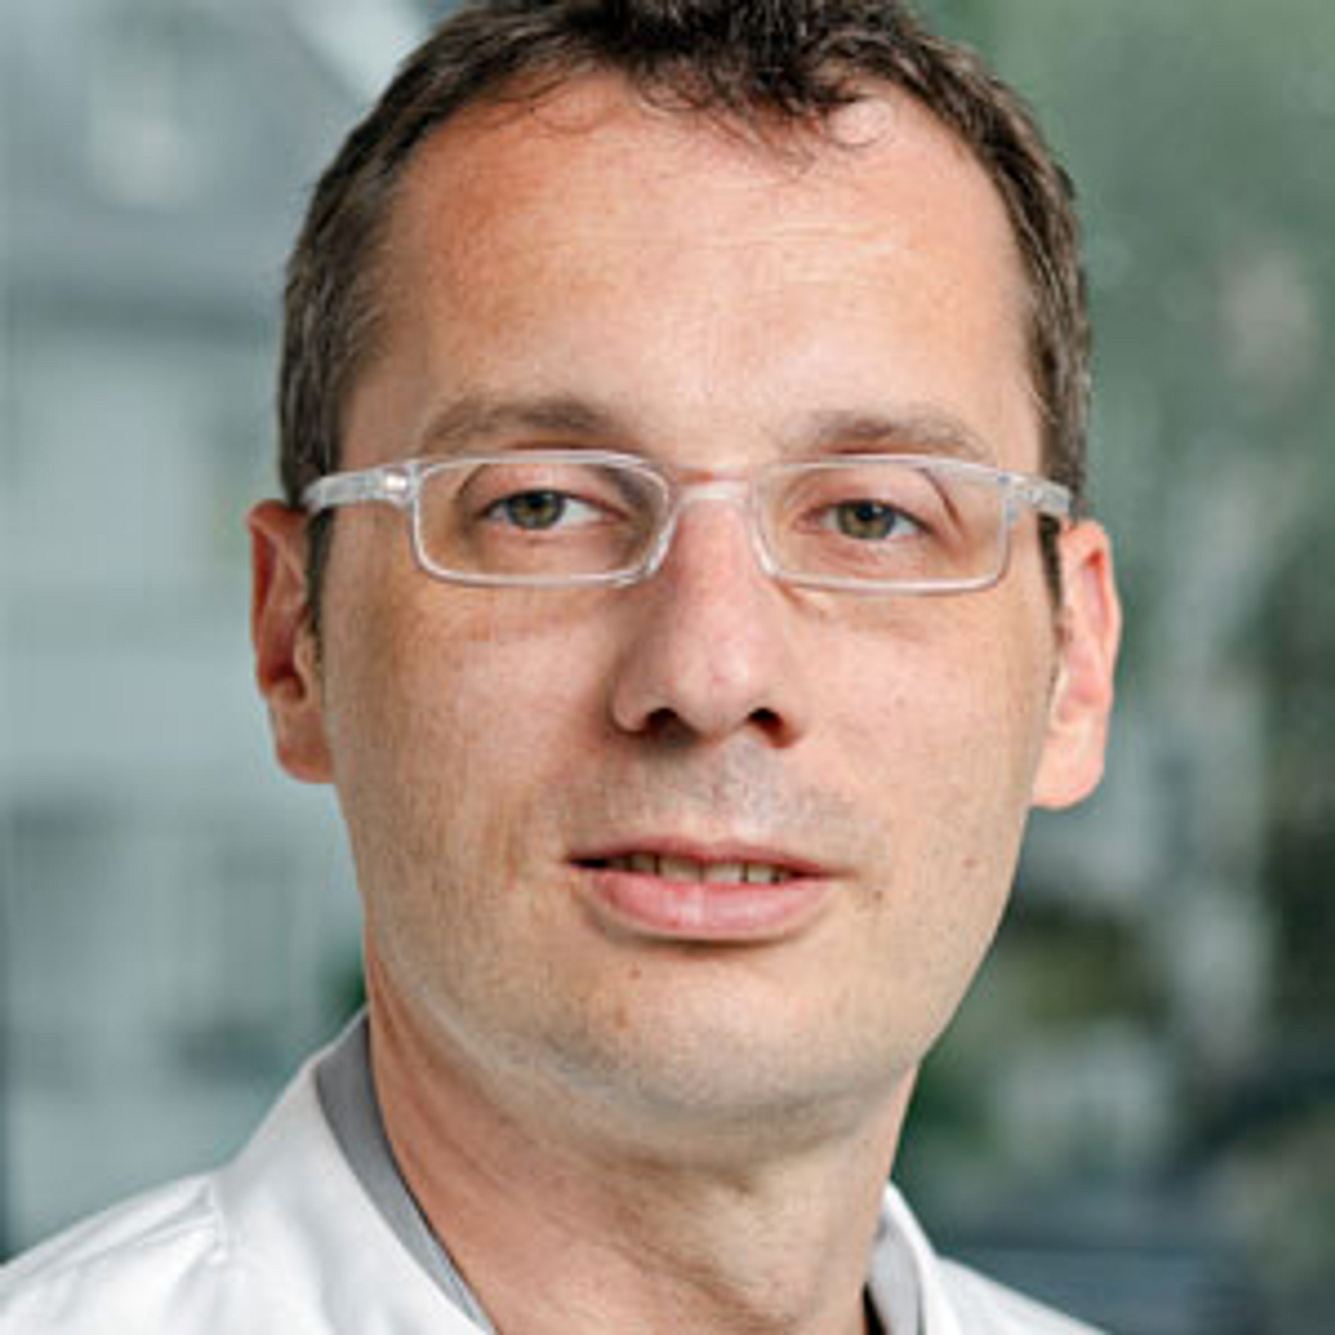 Arzt Dr. Charly Gaul, Migräne-Klinik Königstein/Taunus, im Interview zu Kopfschmerzen